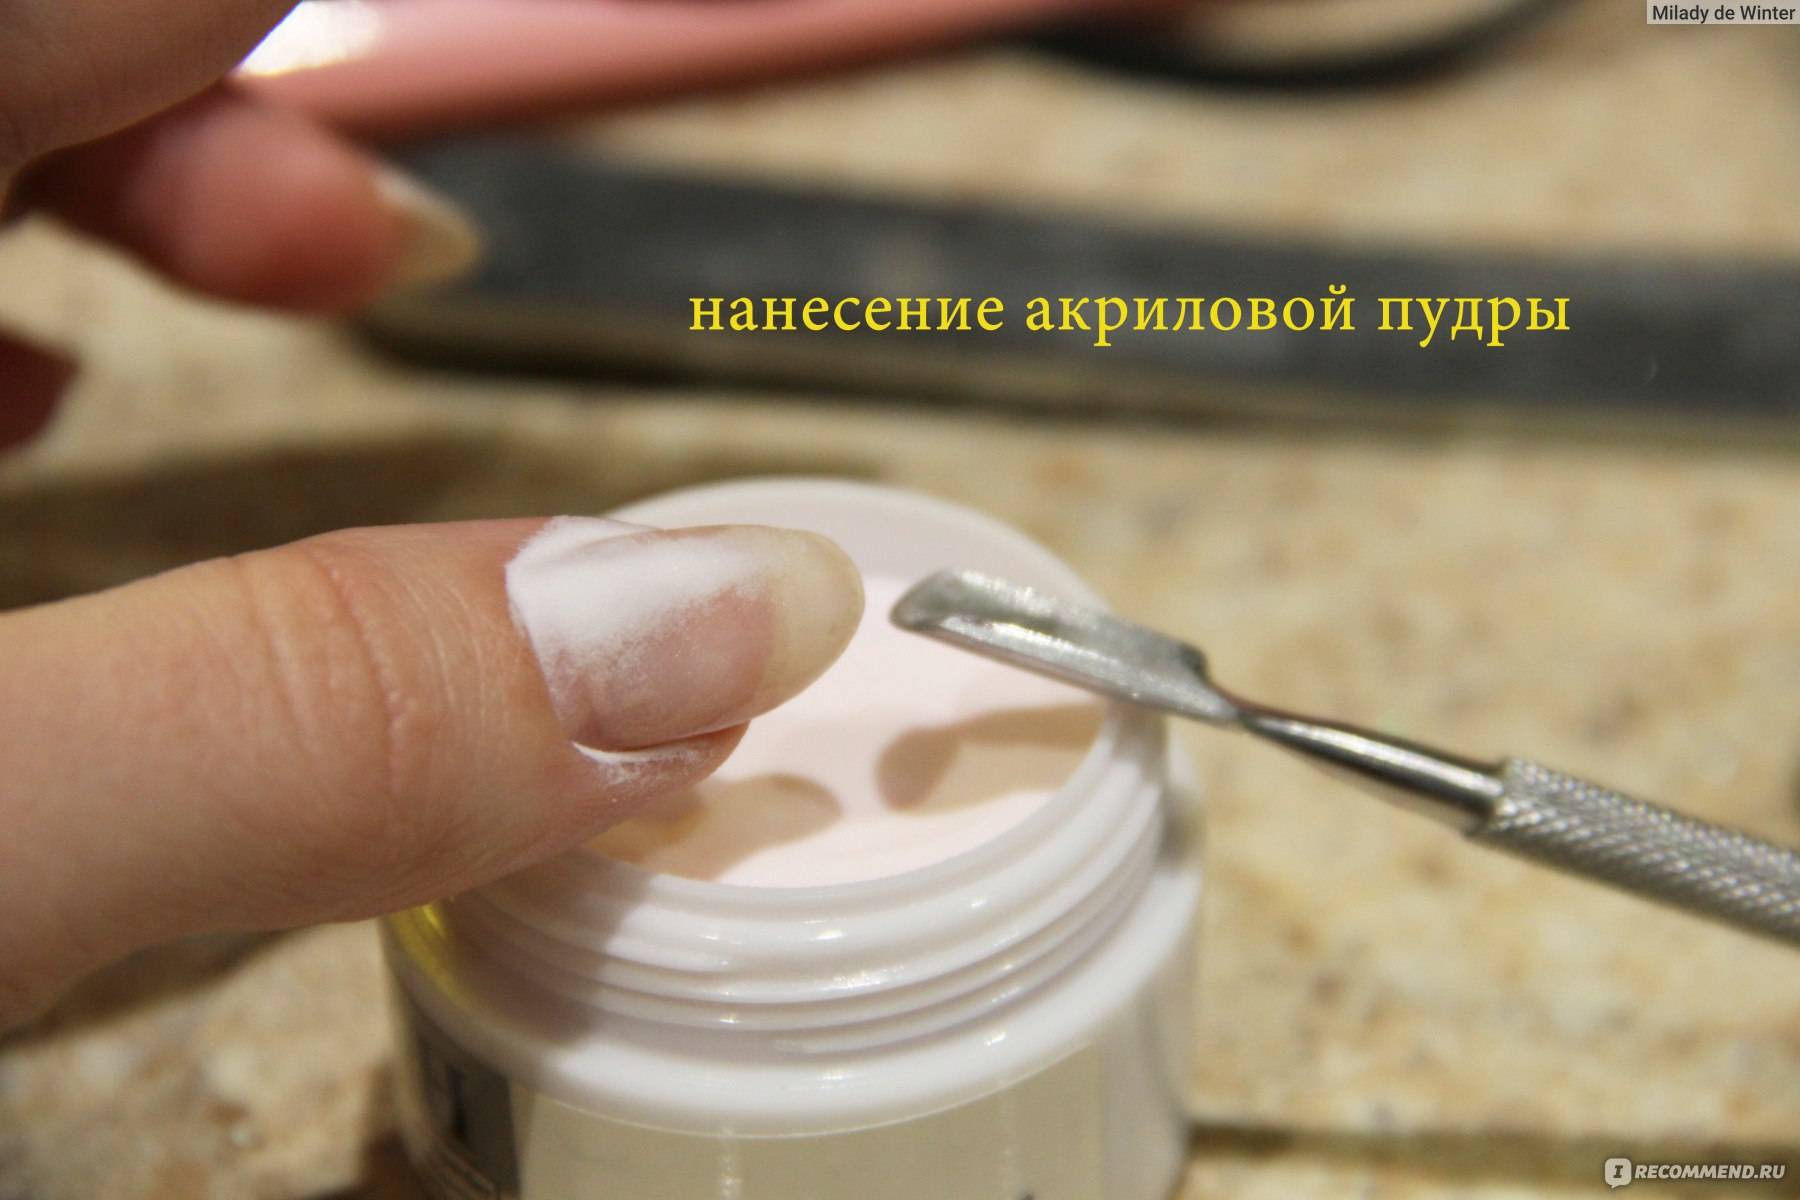 Укрепление ногтей акриловой пудрой под гель-лак — особенности домашней процедуры